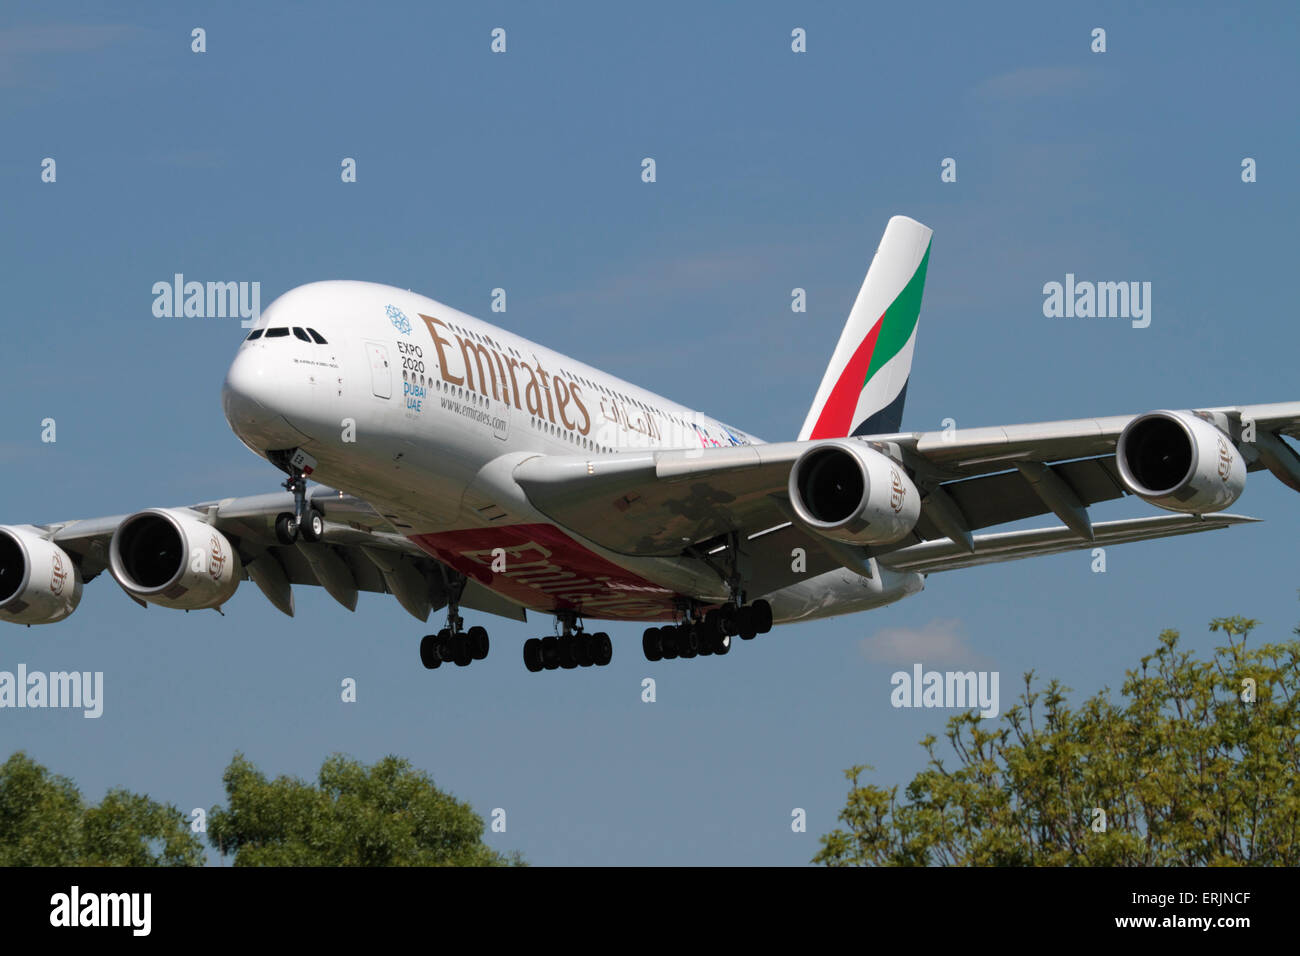 Emirates Airline Airbus A380 grande quattro-motore long haul aereo di linea sulla rotta di avvicinamento all'Aeroporto di Londra Heathrow. Vista frontale closeup. Foto Stock